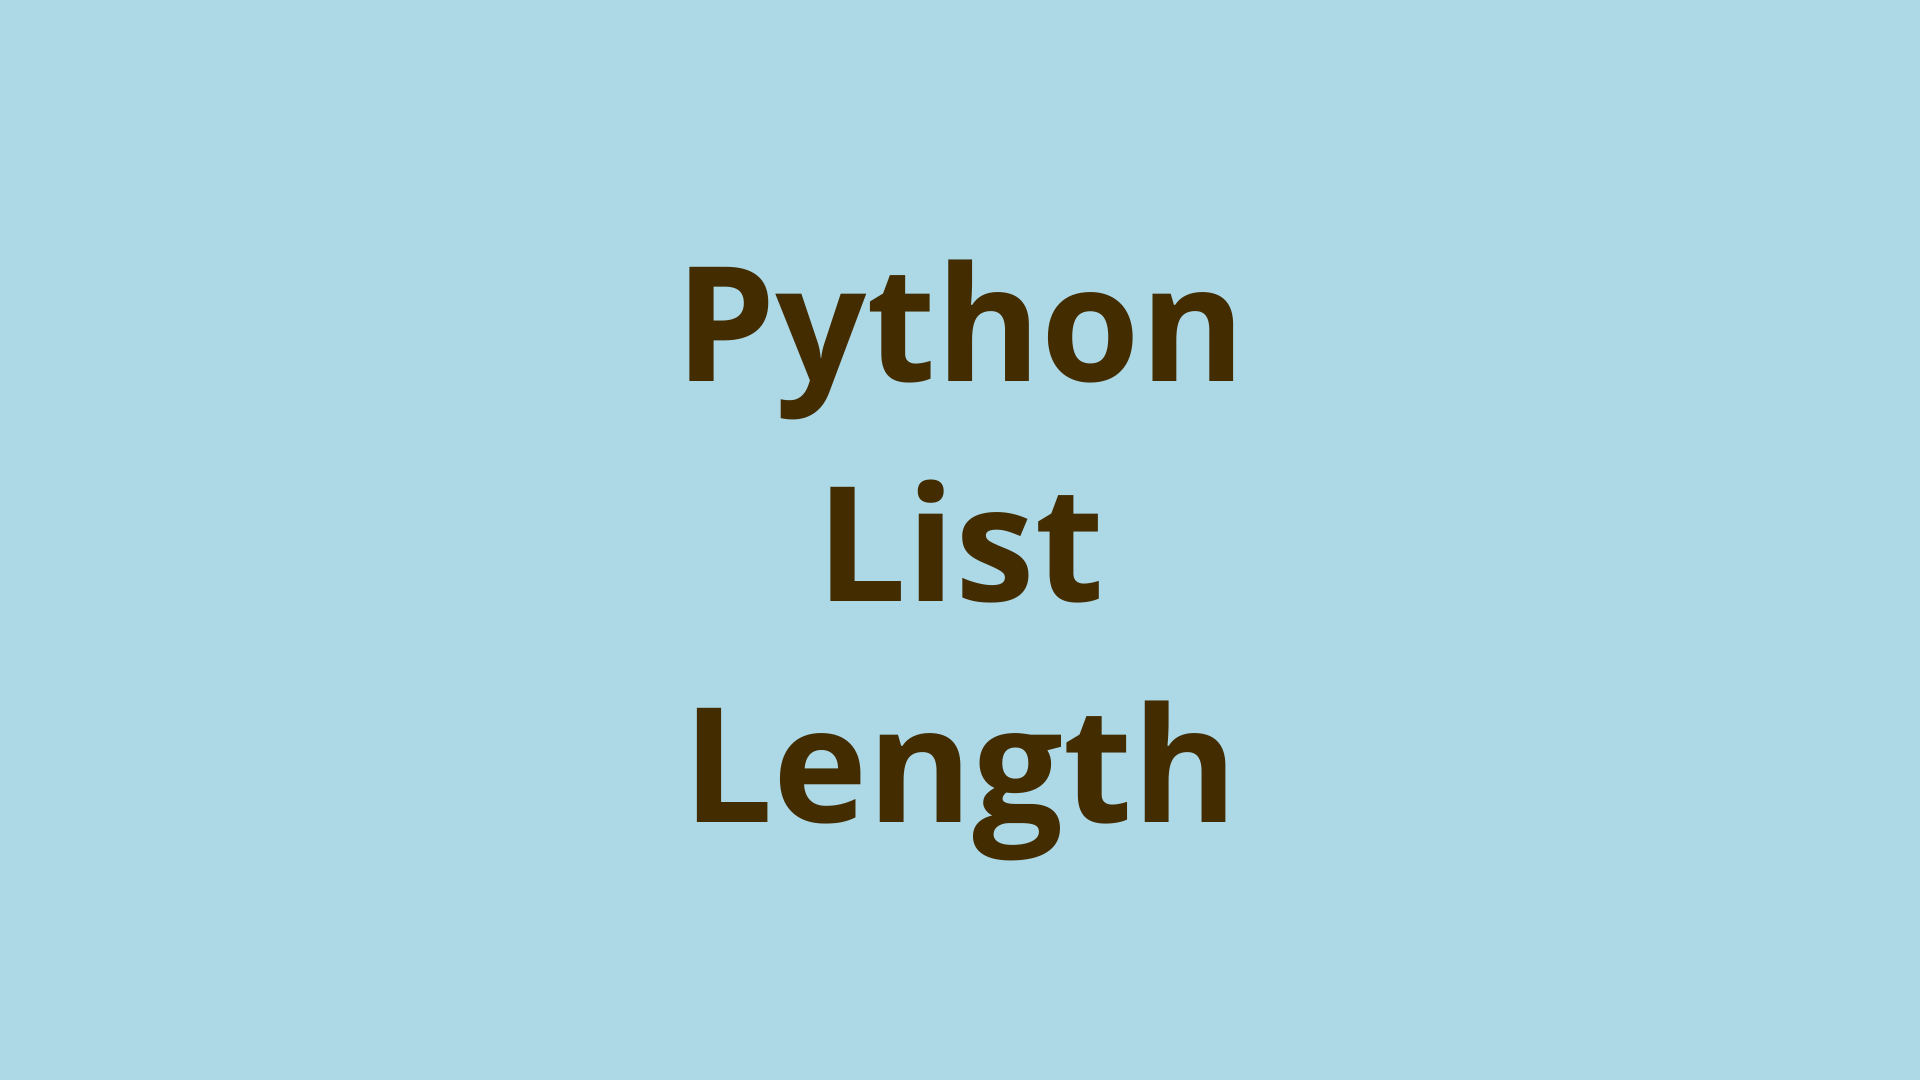 Image of Python List Length